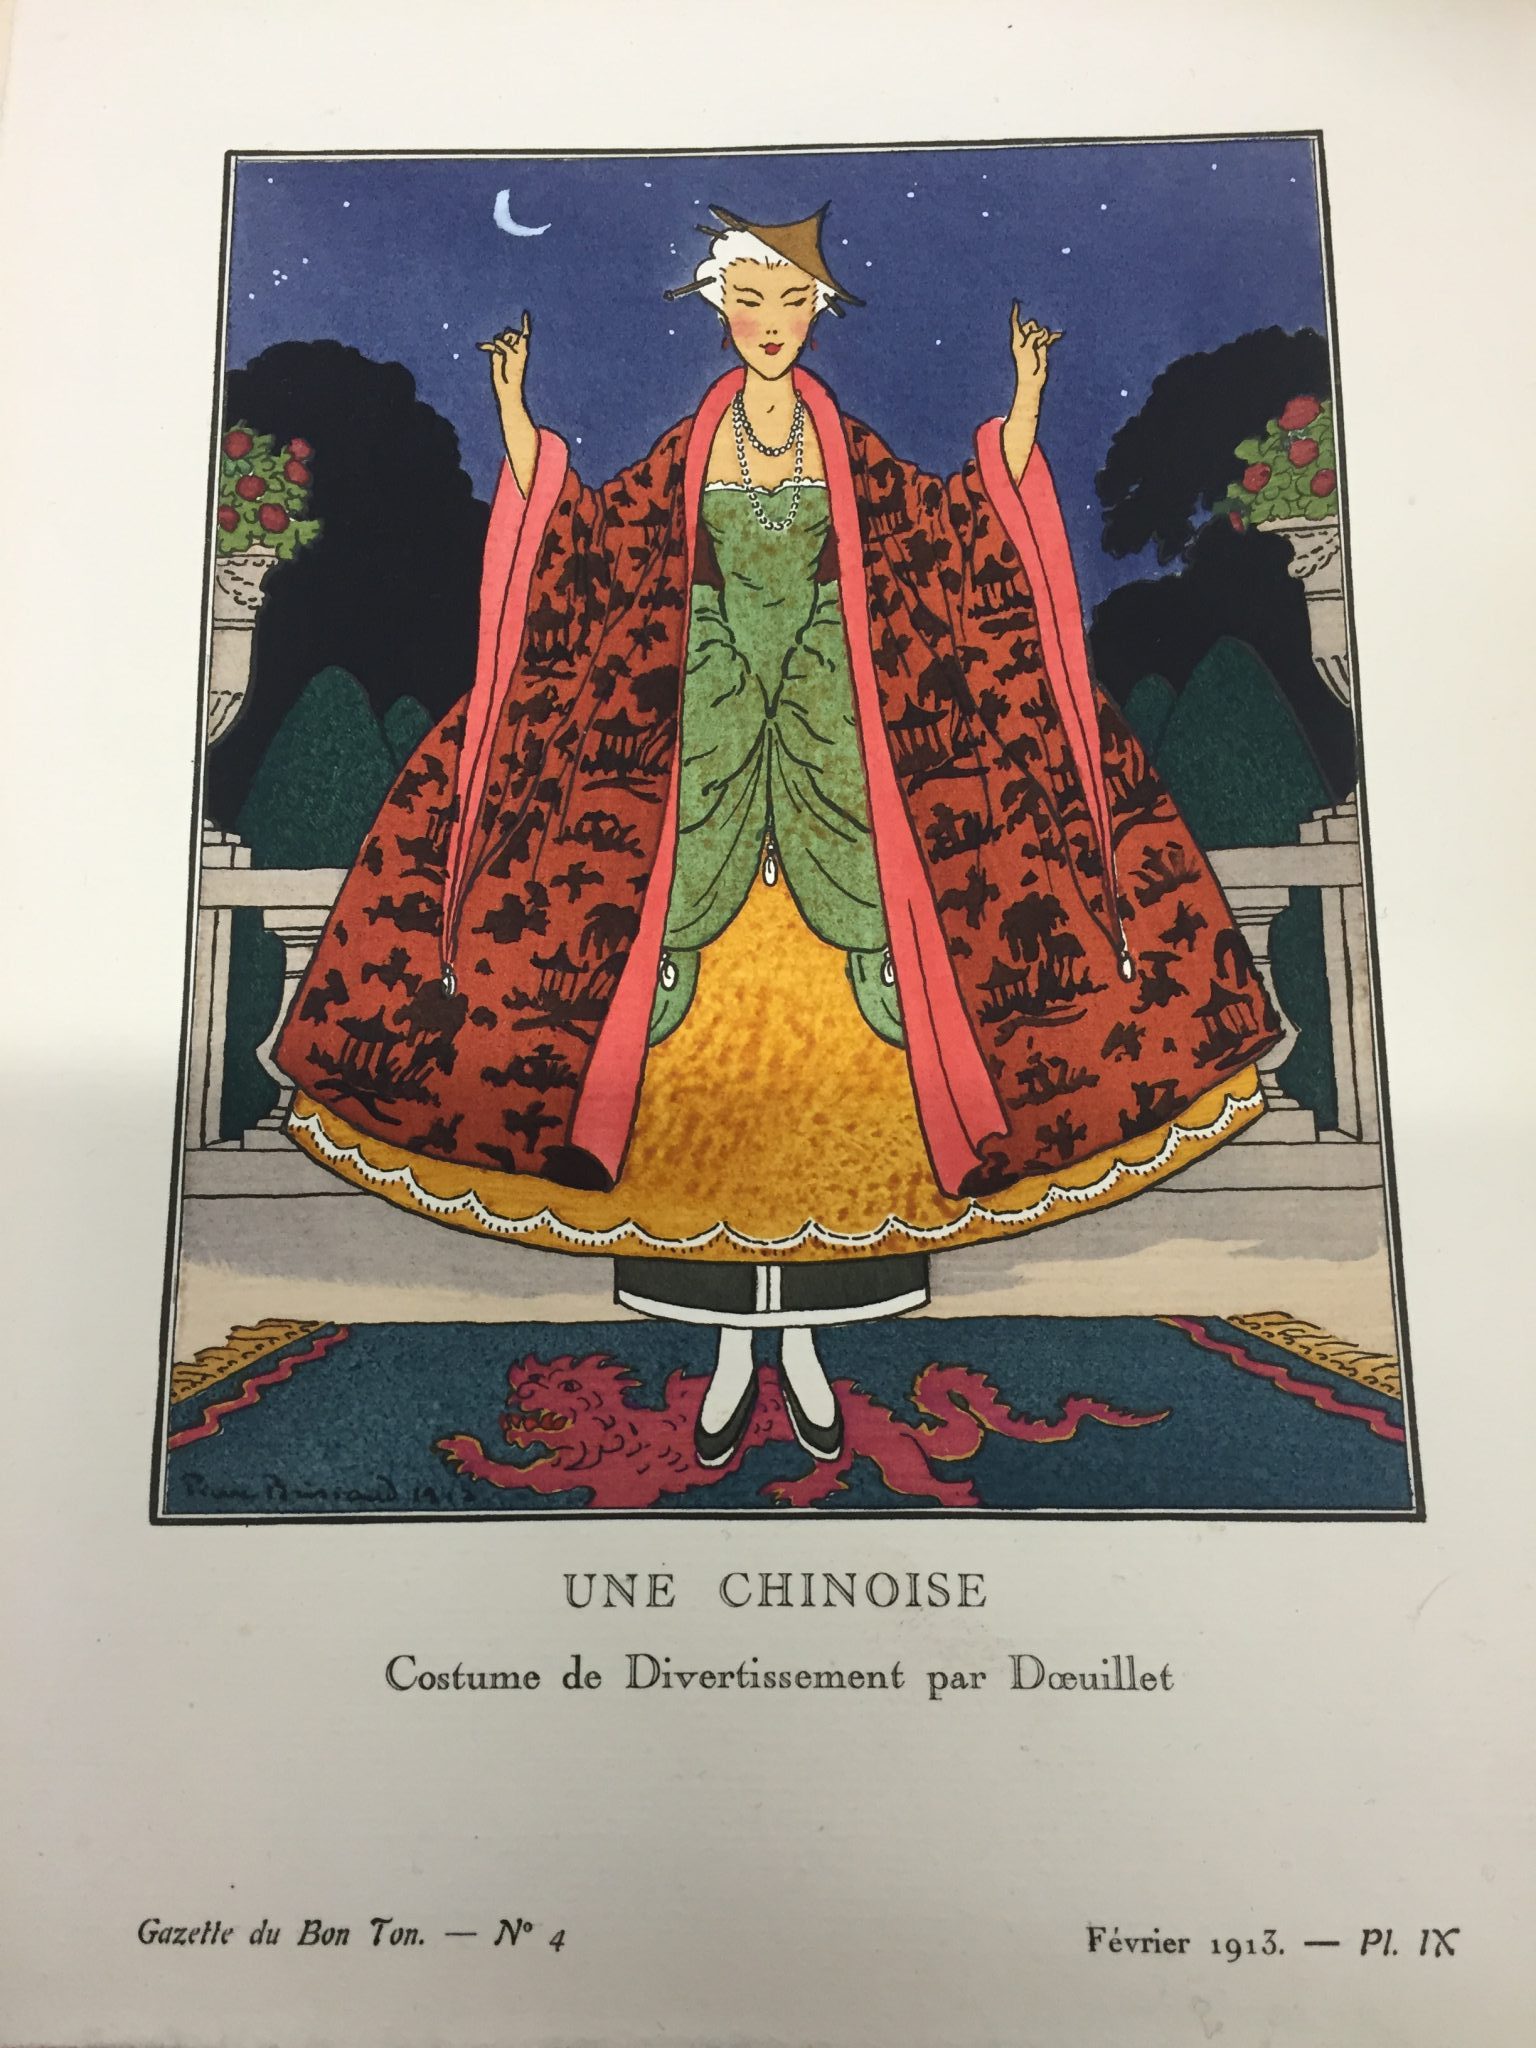 Cultural Appropriation and Orientalism in “‘Une Chinoise’ Costume de Divertissement par Douillet”